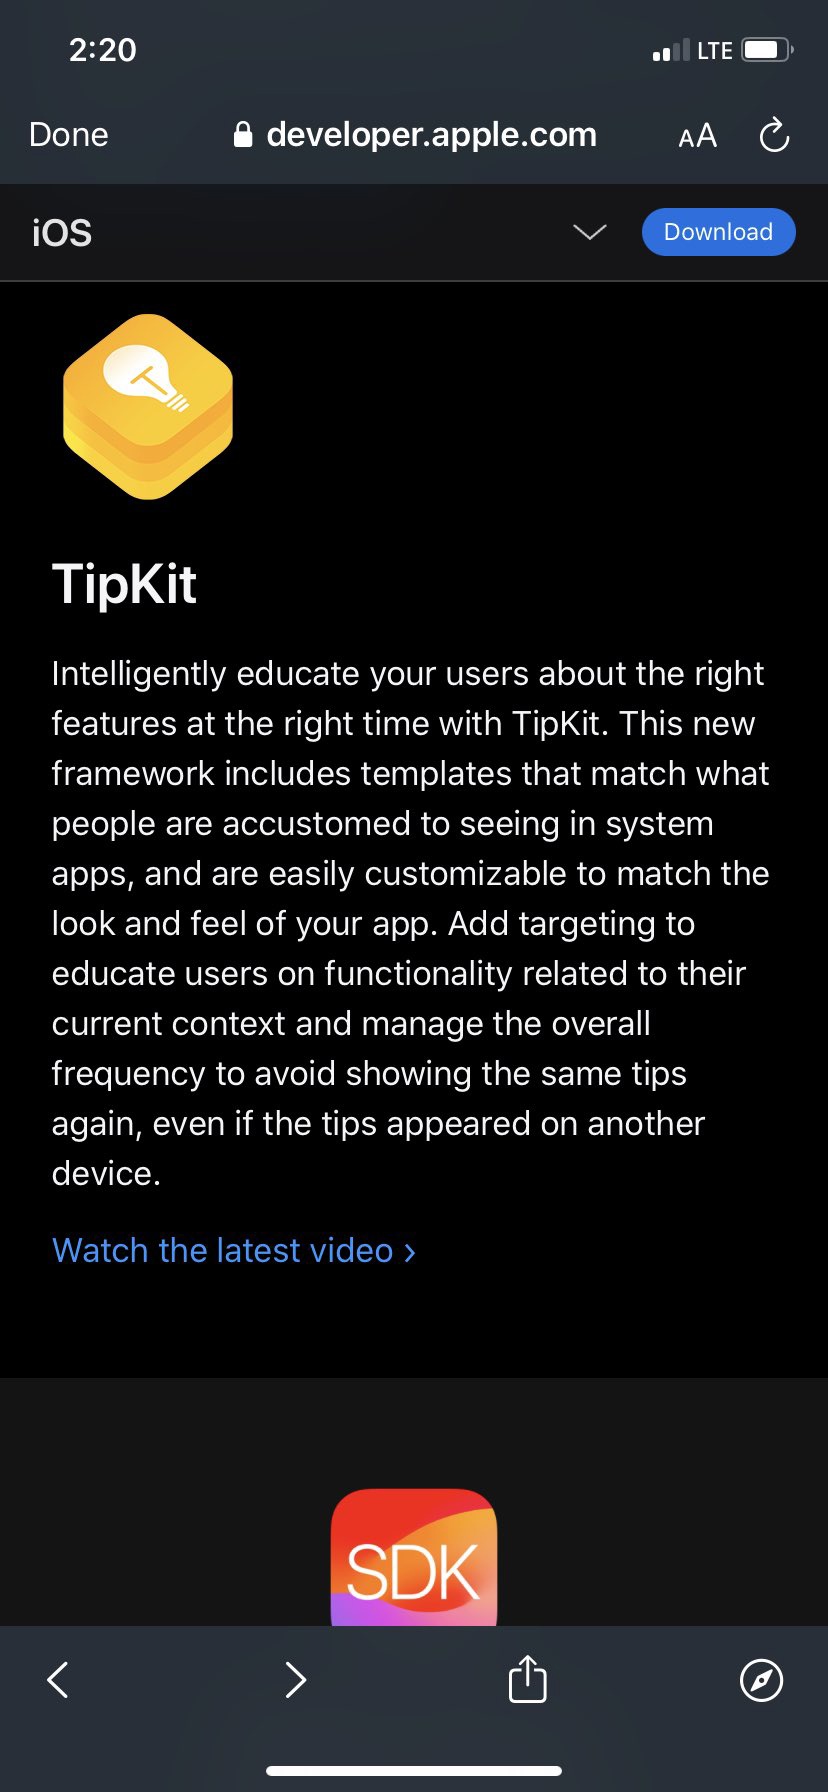 苹果推出 TipKit：向开发者提供 App 教程模板、帮用户快速上手